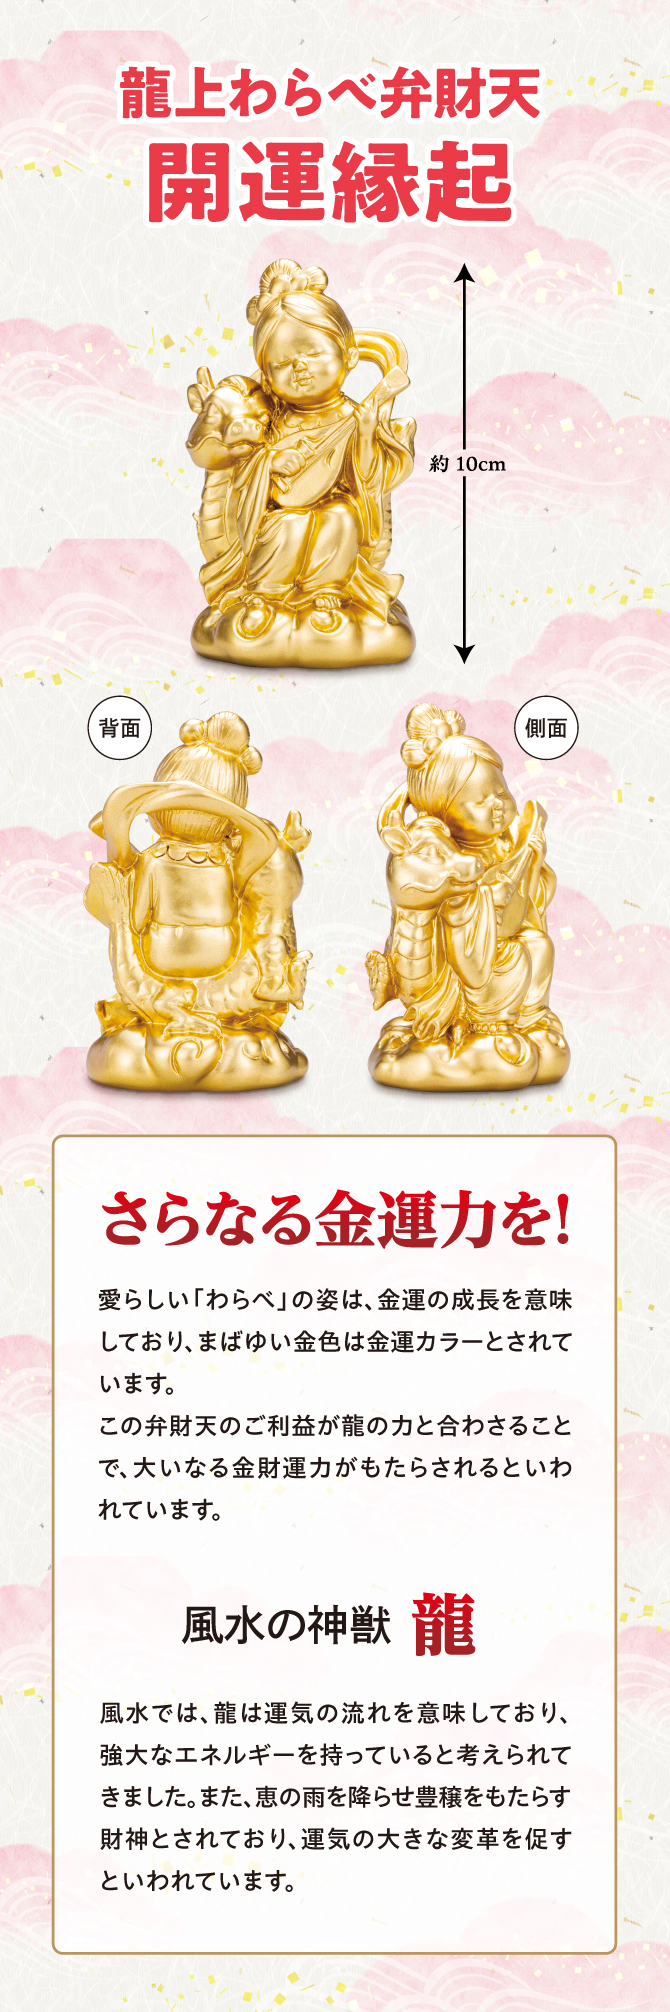 七福神の一柱である弁財天は、財運をもたらすとされ日本全国で祀られている人気の神様